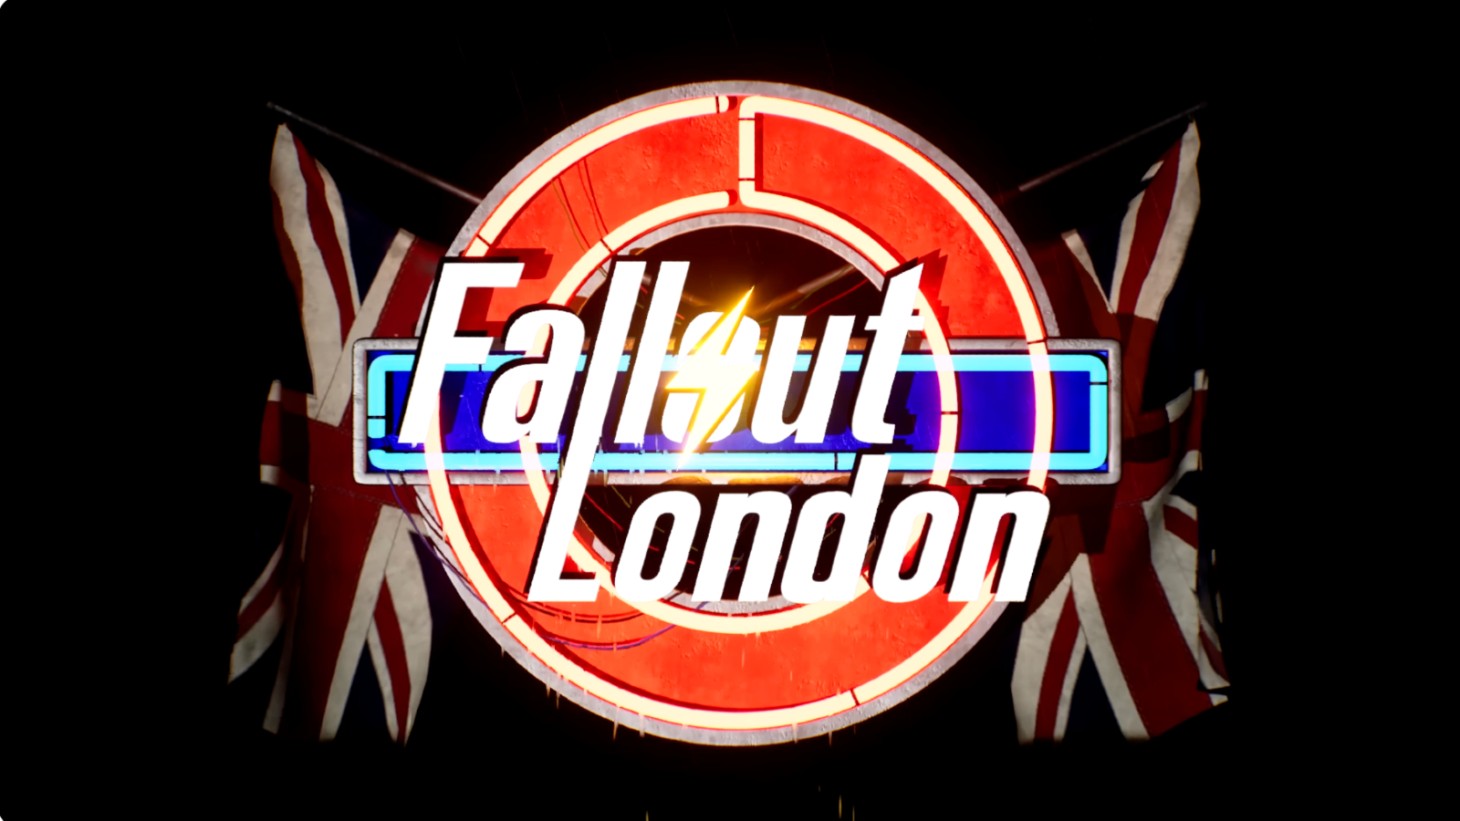 Fallout: London, die umfangreiche Modifikation für Fallout 4, wird in einem neuen Trailer im April veröffentlicht